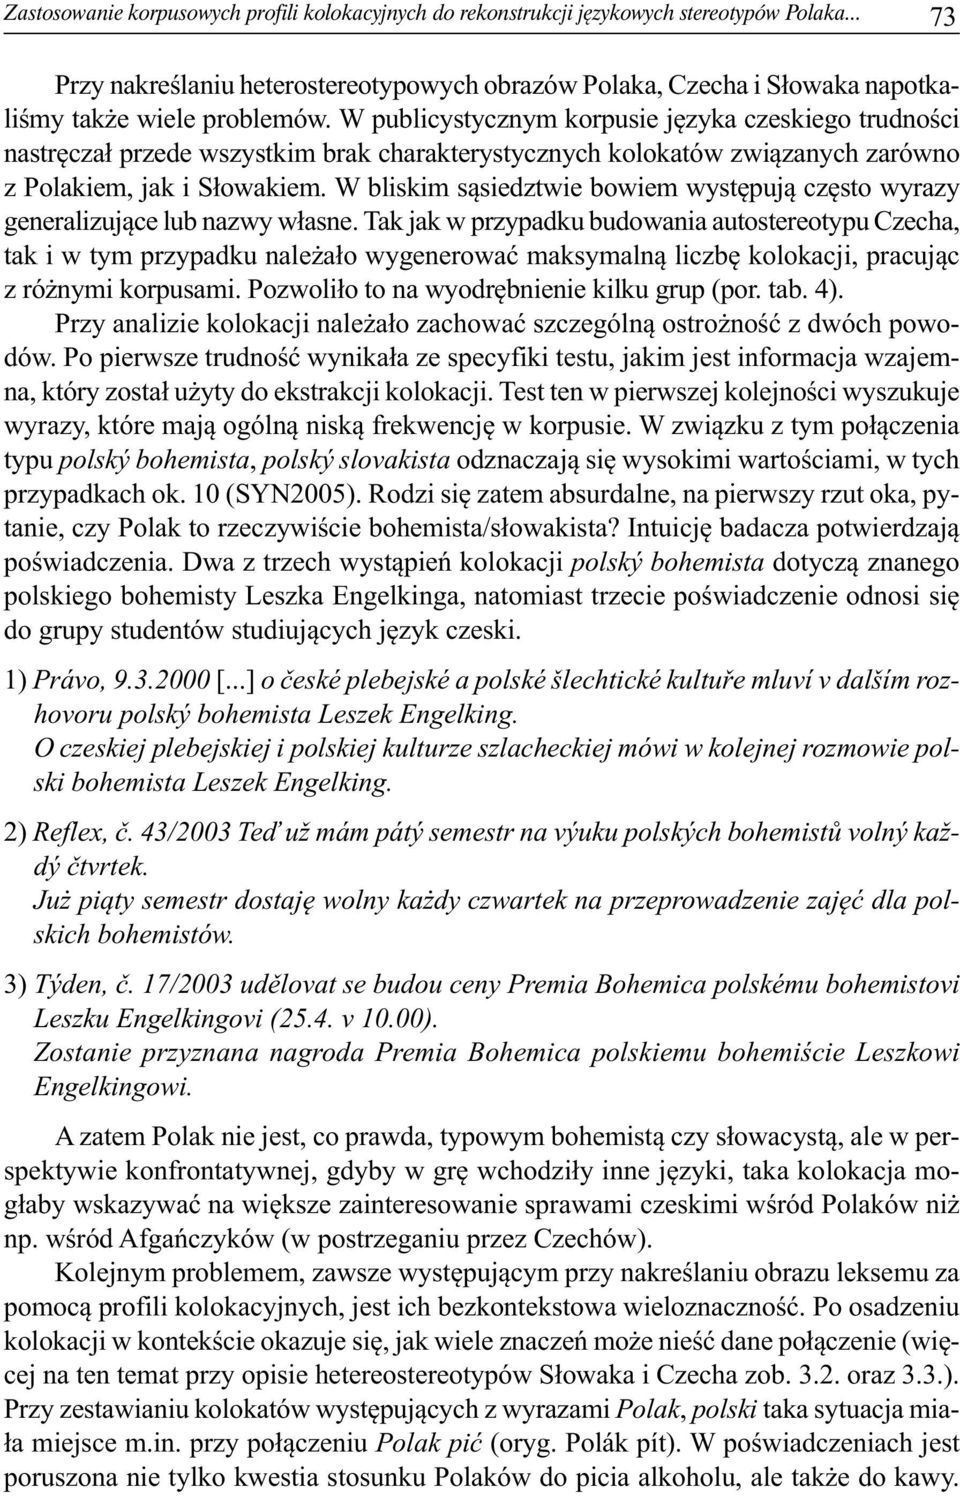 W publicystycznym korpusie języka czeskiego trudności nastręczał przede wszystkim brak charakterystycznych kolokatów związanych zarówno z Polakiem, jak i Słowakiem.